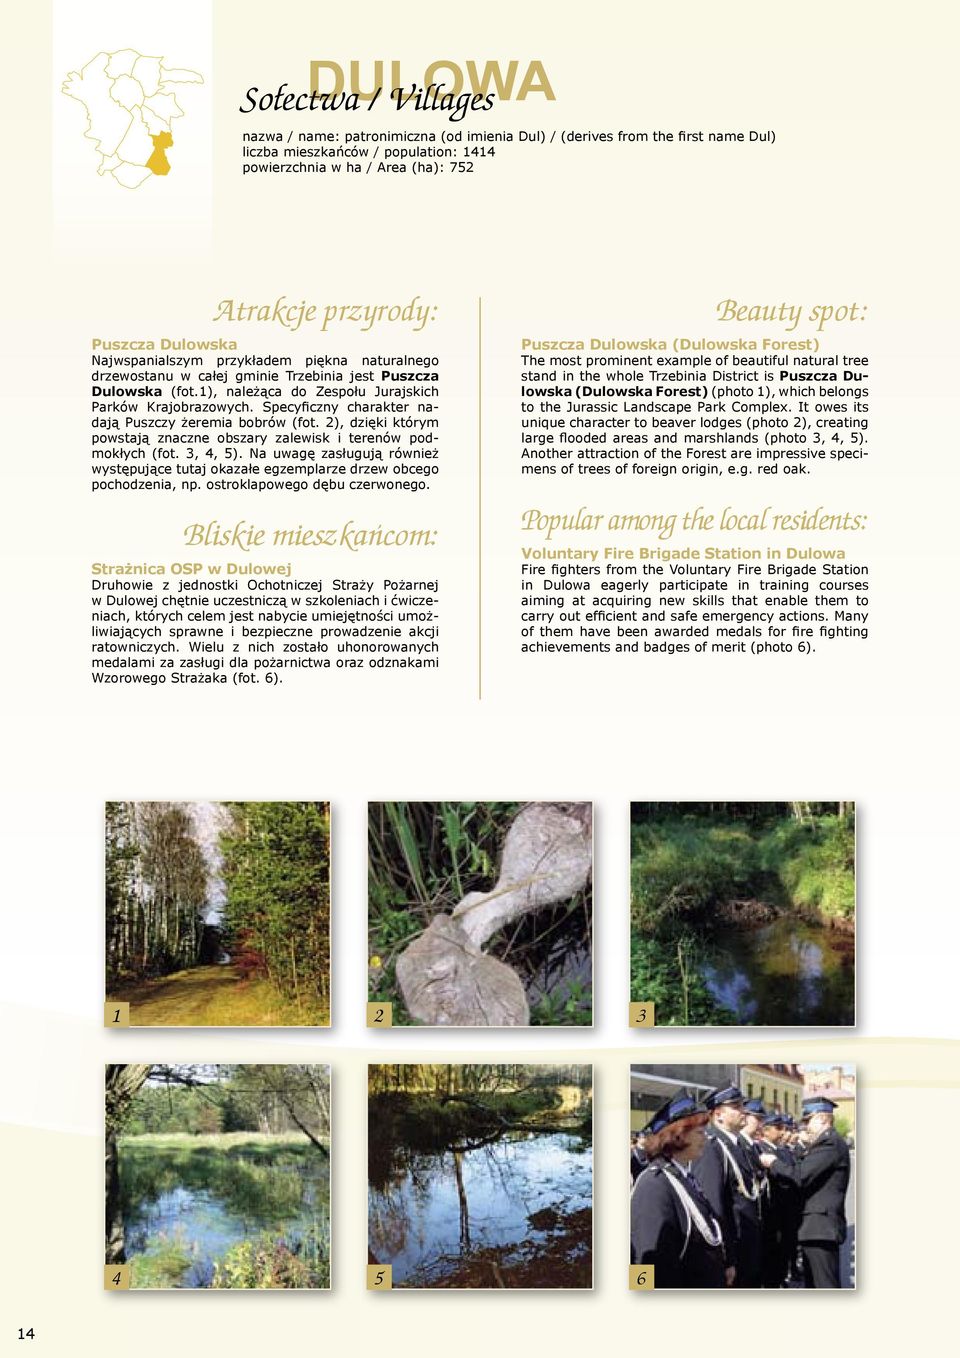 Specyficzny charakter nadają Puszczy żeremia bobrów (fot. 2), dzięki którym powstają znaczne obszary zalewisk i terenów podmokłych (fot. 3, 4, 5).